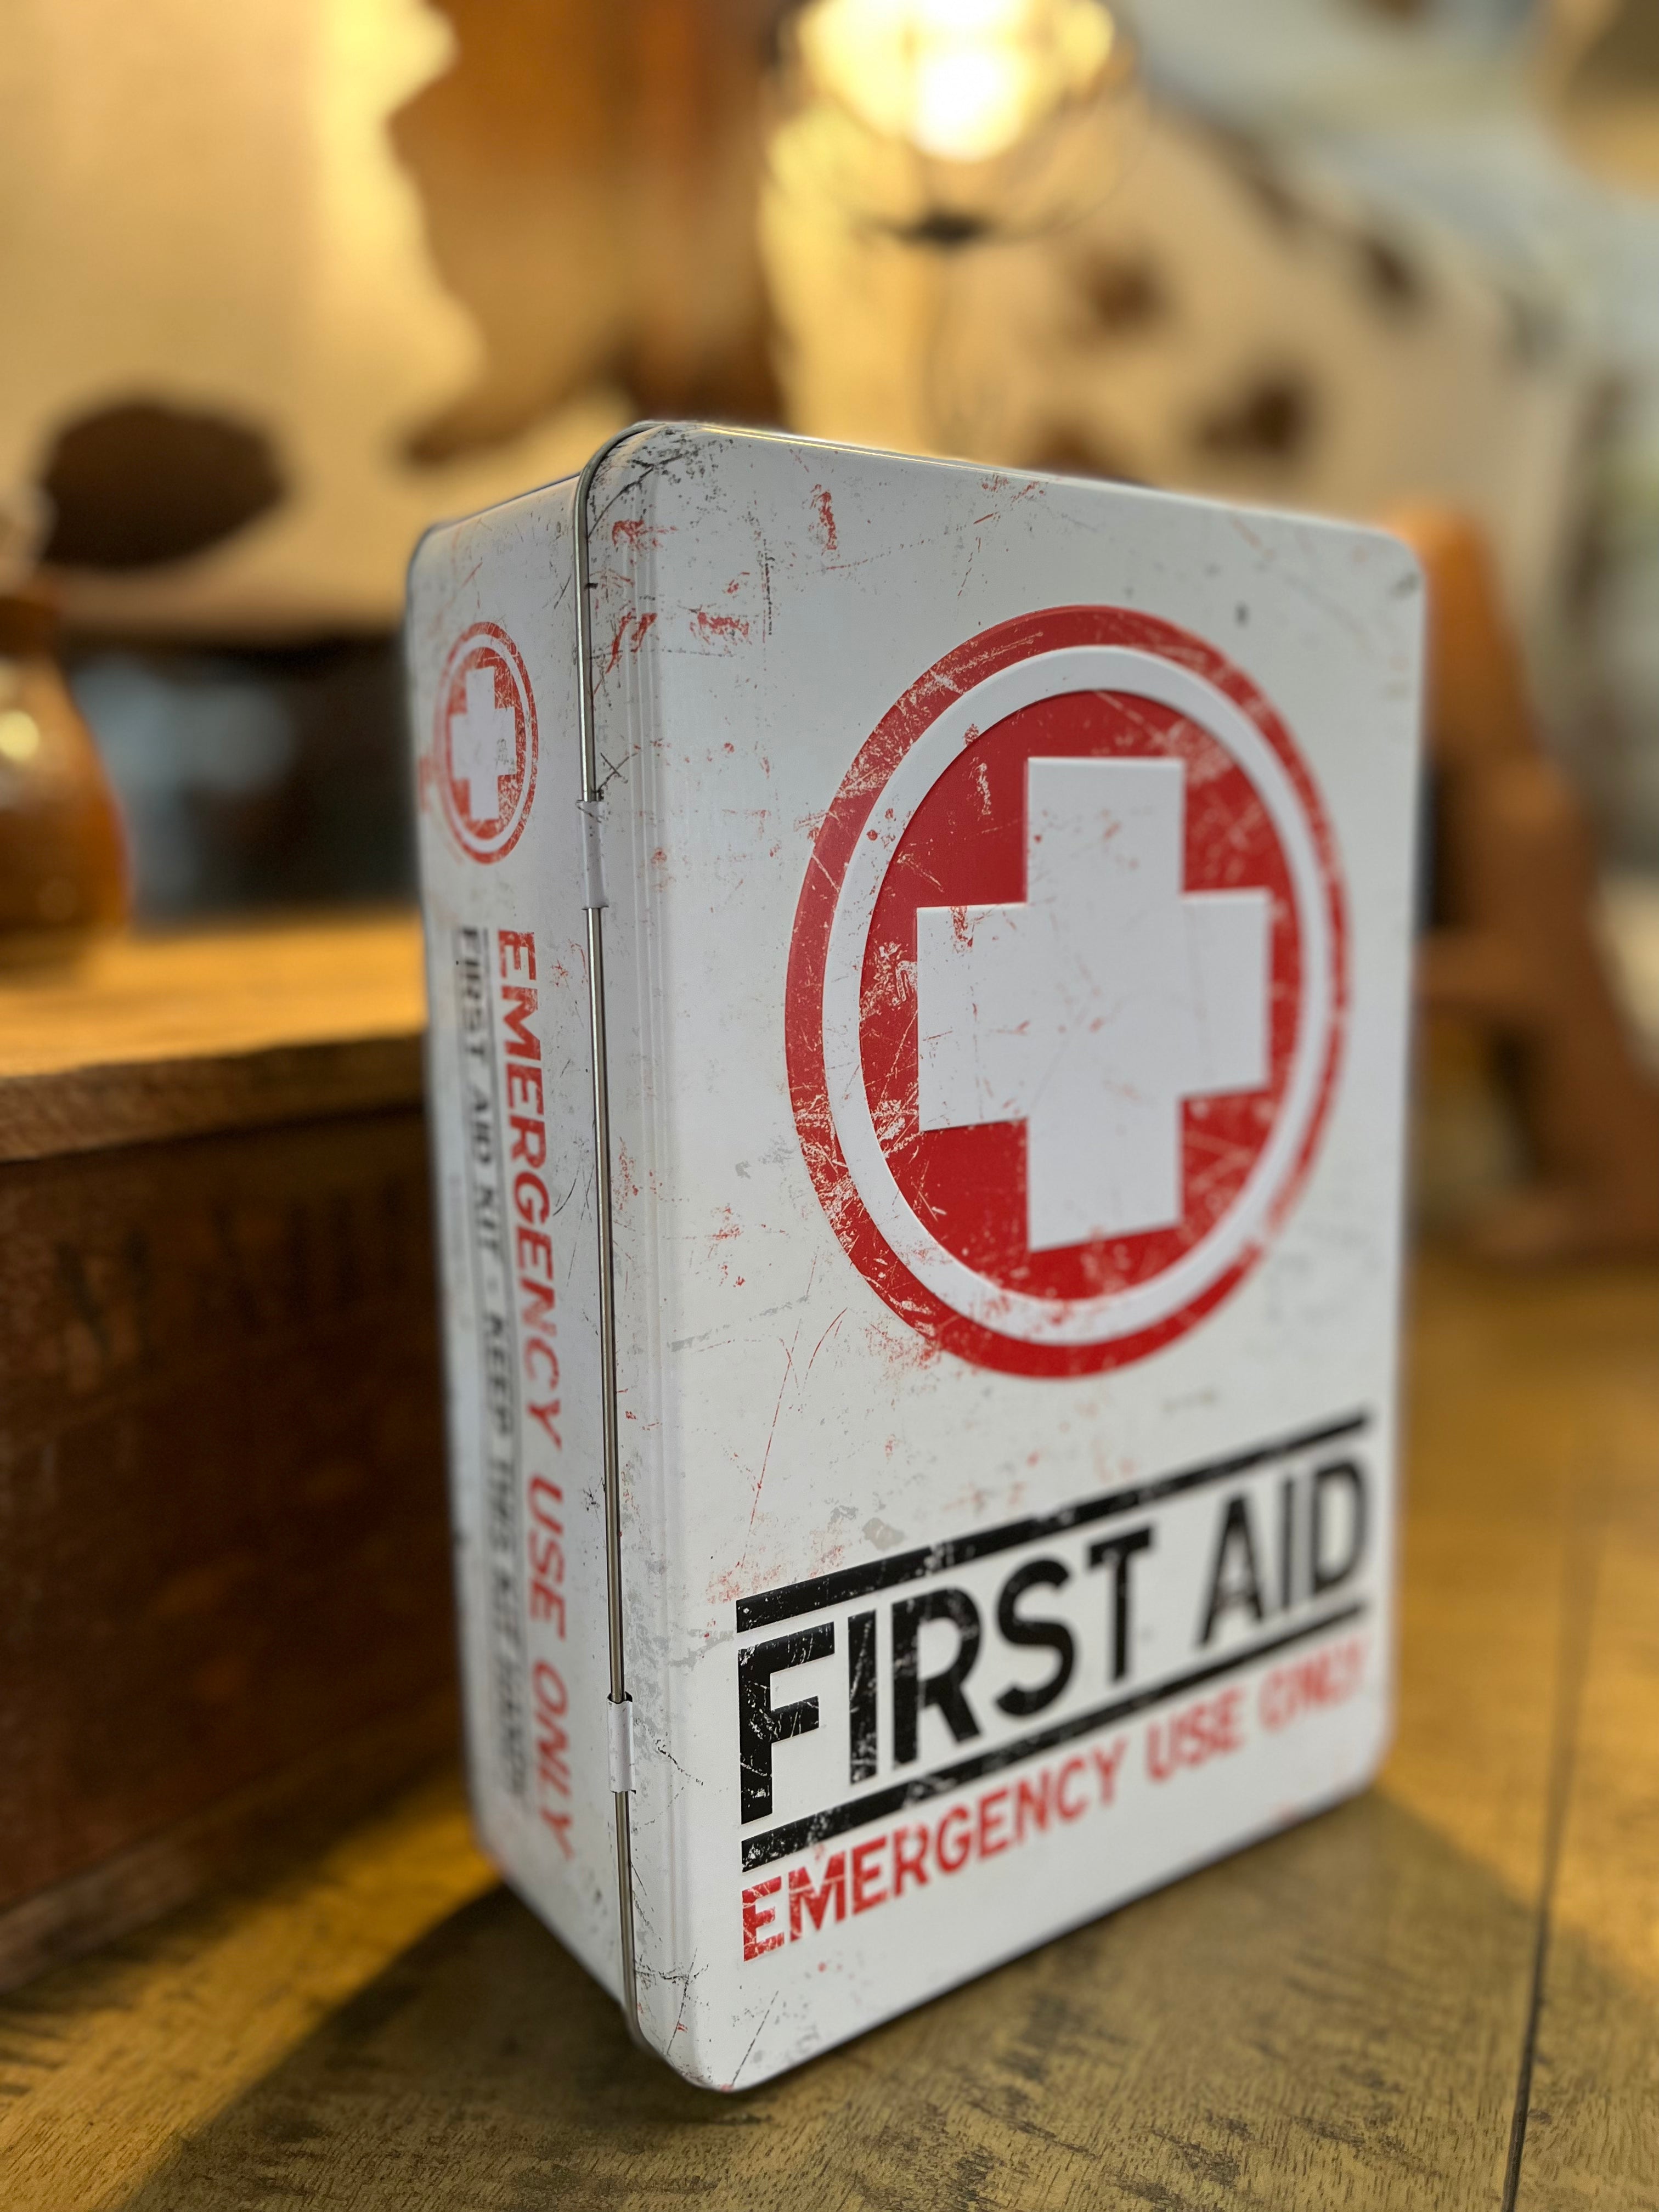 FIRST AID Tin box